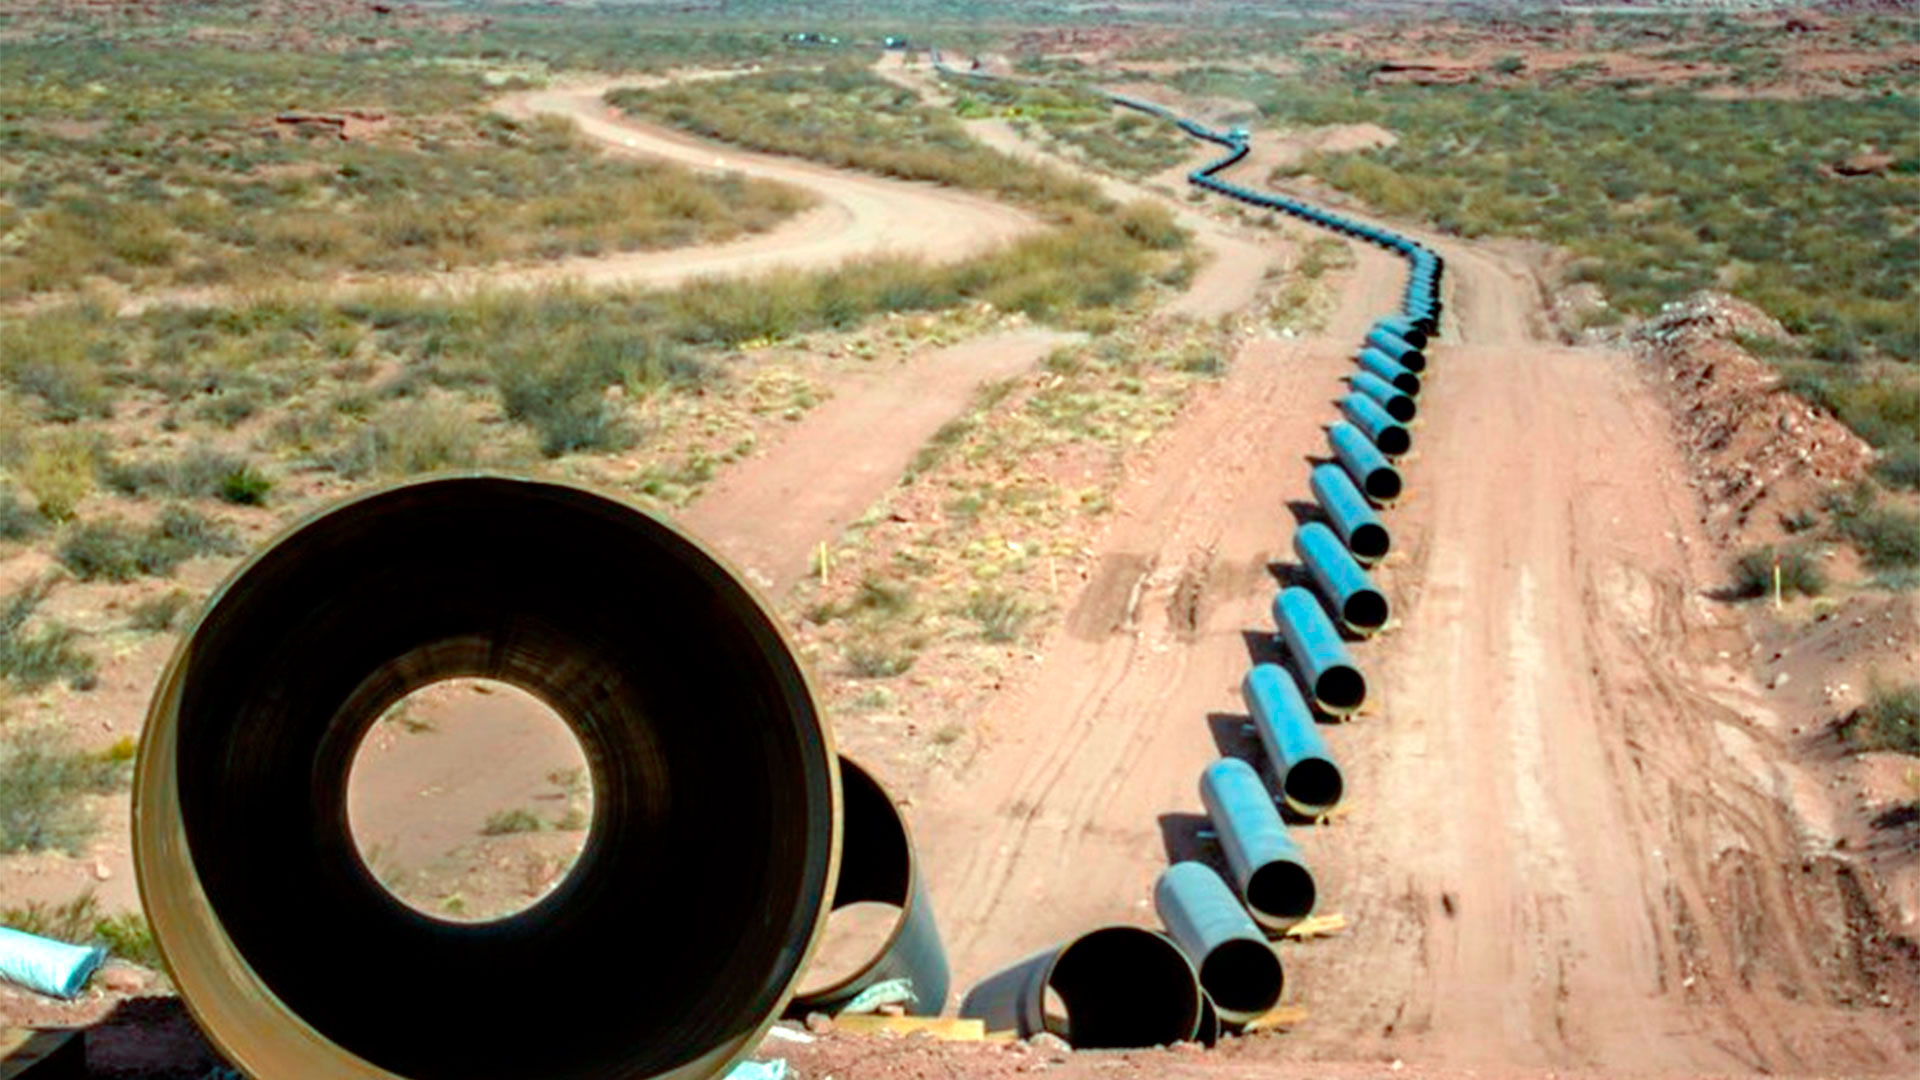 En obra, el gasoducto Néstor Kirchner se desarrolla en el sur de la Argentina. El gobierno espera concluirlo en junio de 2023 y exportar energía